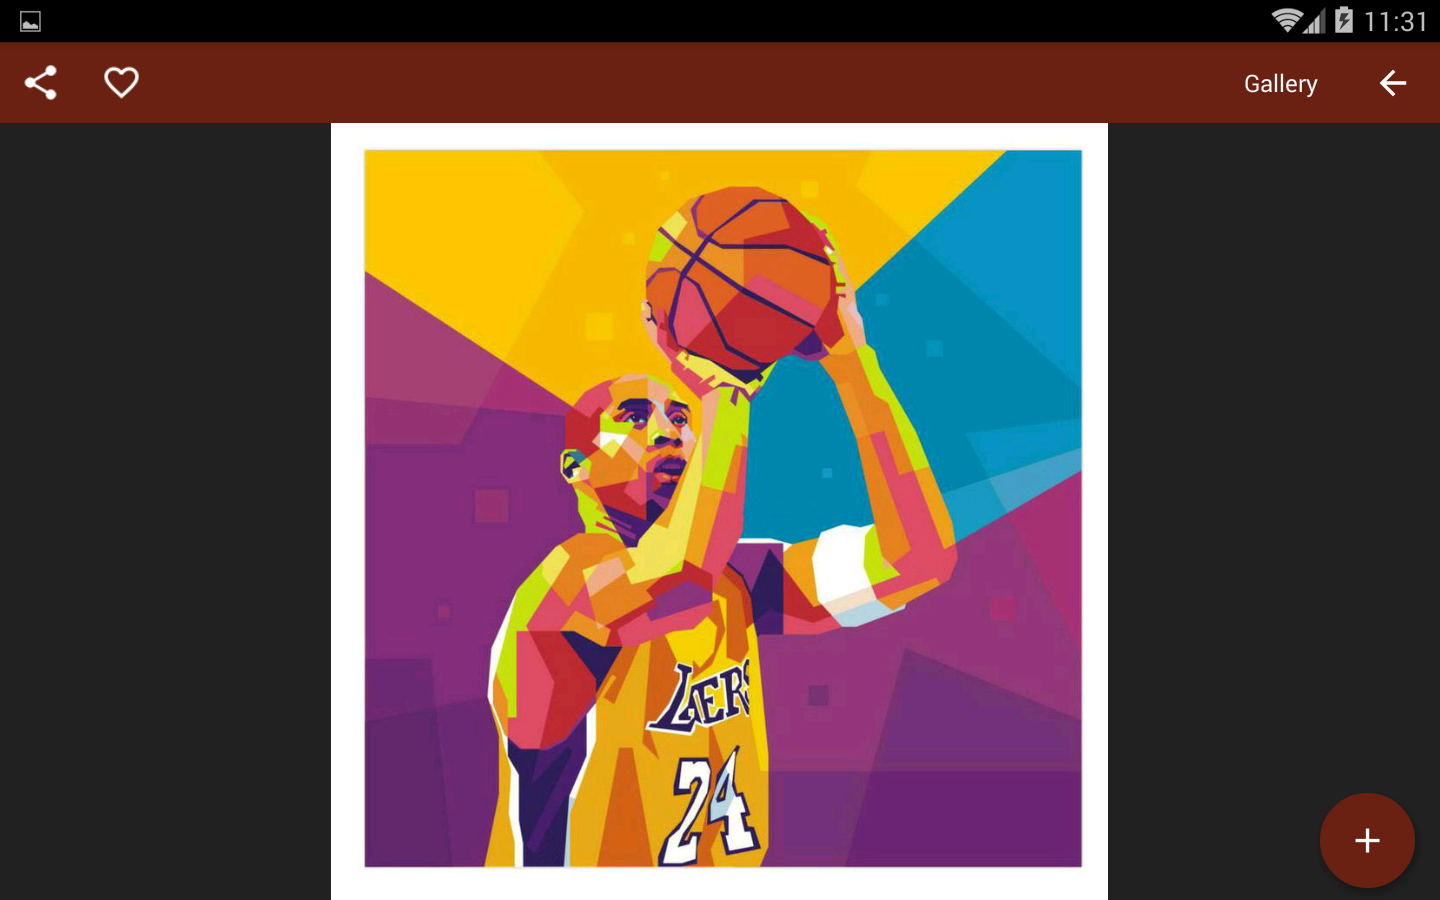 Dunk Russell Westbrook Wallpapers High Definition, - Basketball Nba Hd - HD Wallpaper 